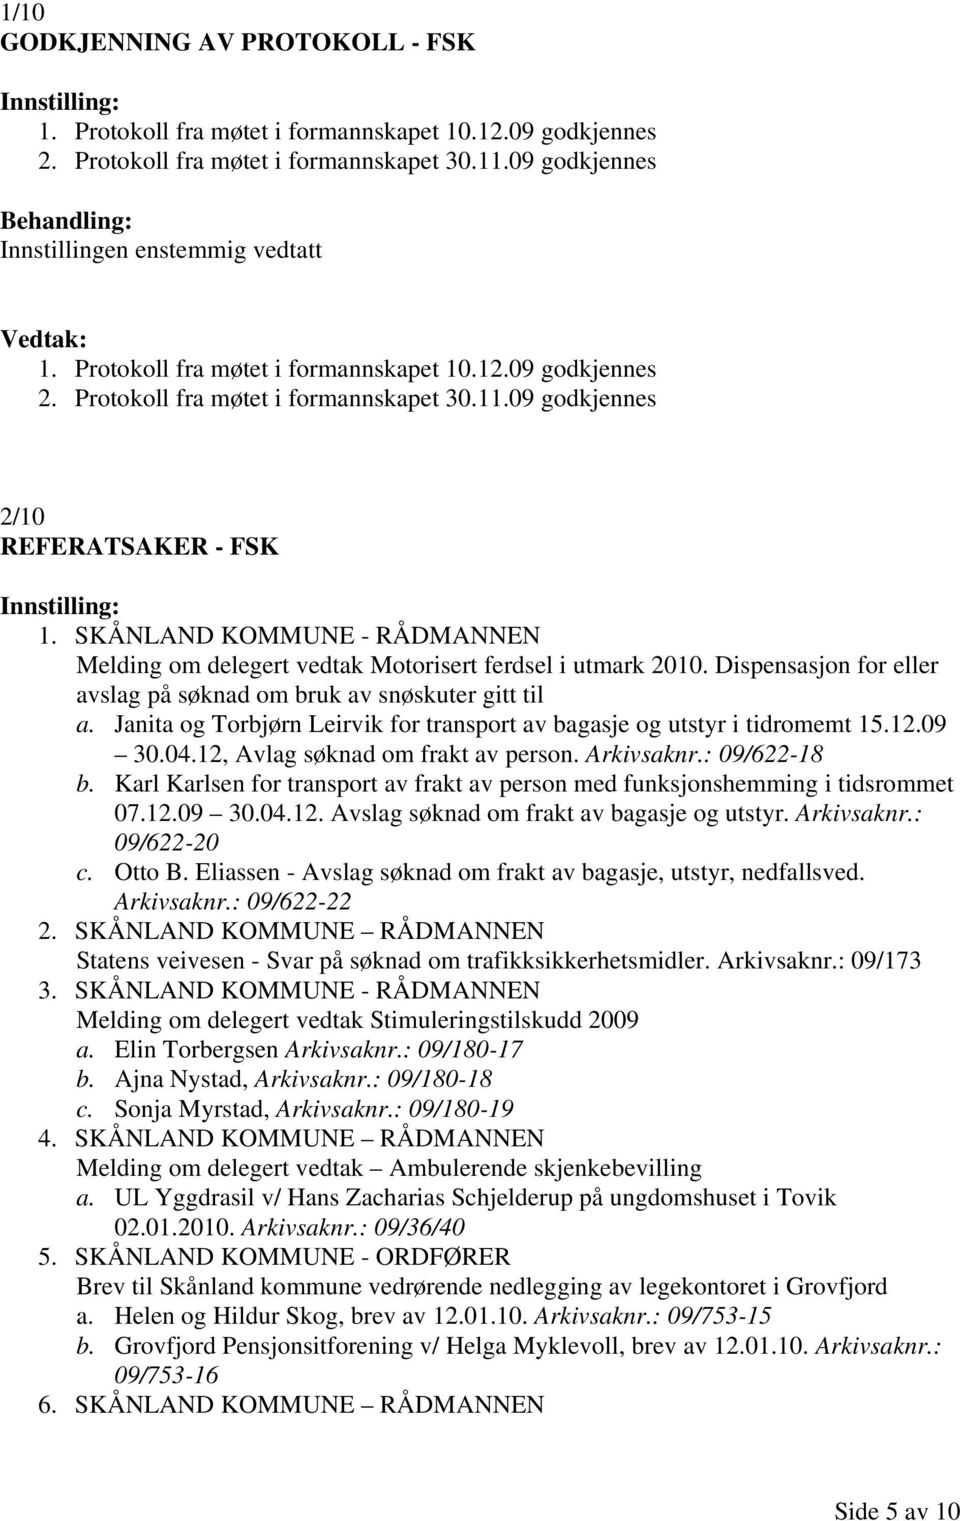 Janita og Torbjørn Leirvik for transport av bagasje og utstyr i tidromemt 15.12.09 30.04.12, Avlag søknad om frakt av person. Arkivsaknr.: 09/622-18 b.